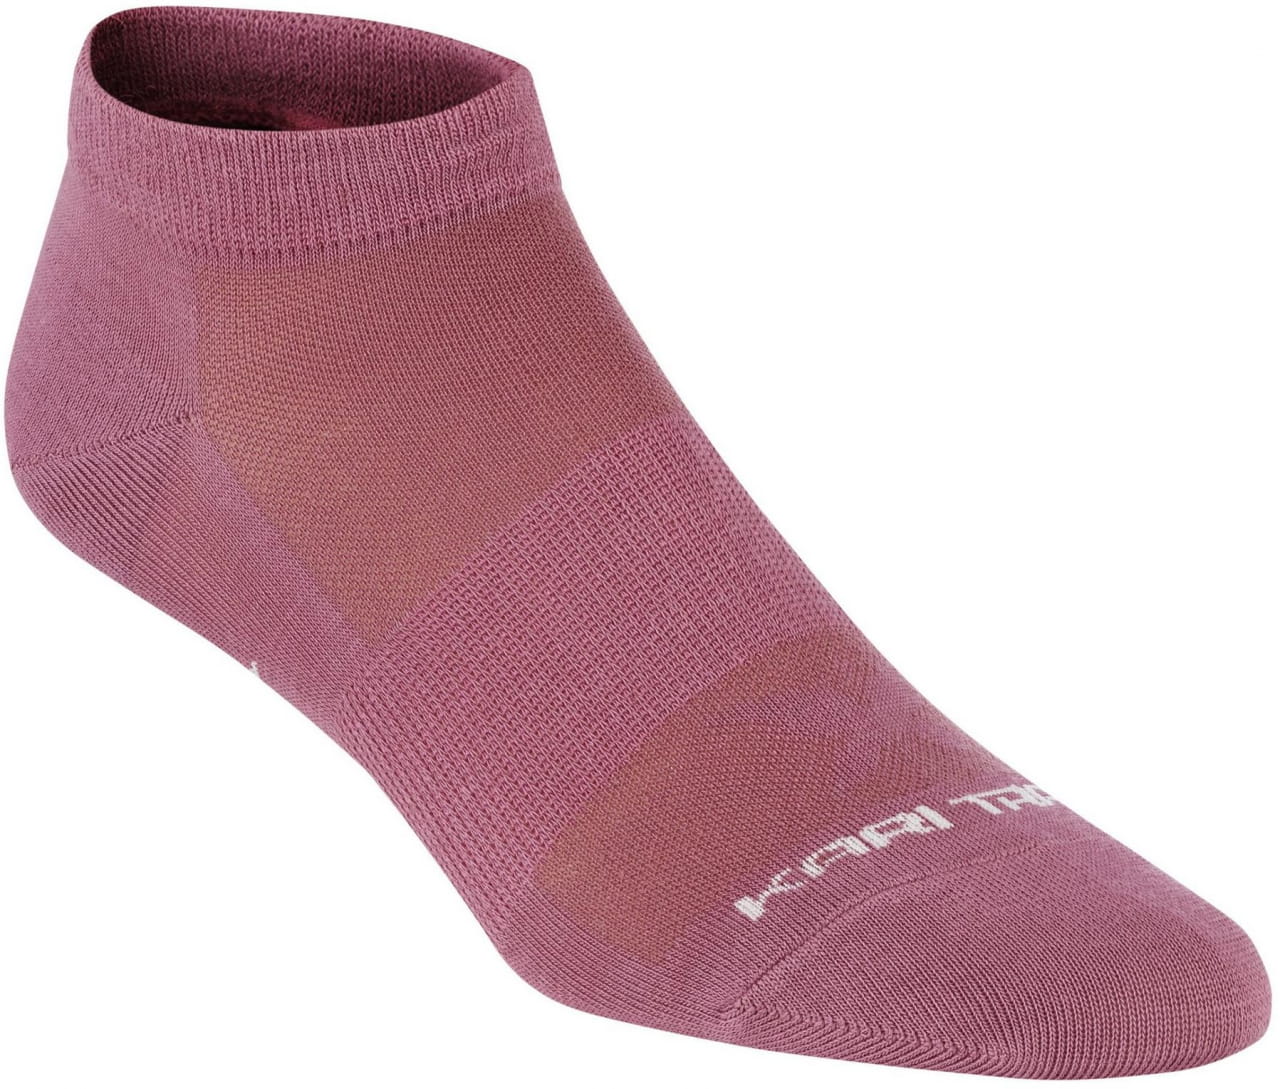 Socken für Frauen Kari Traa Tåfis Sock